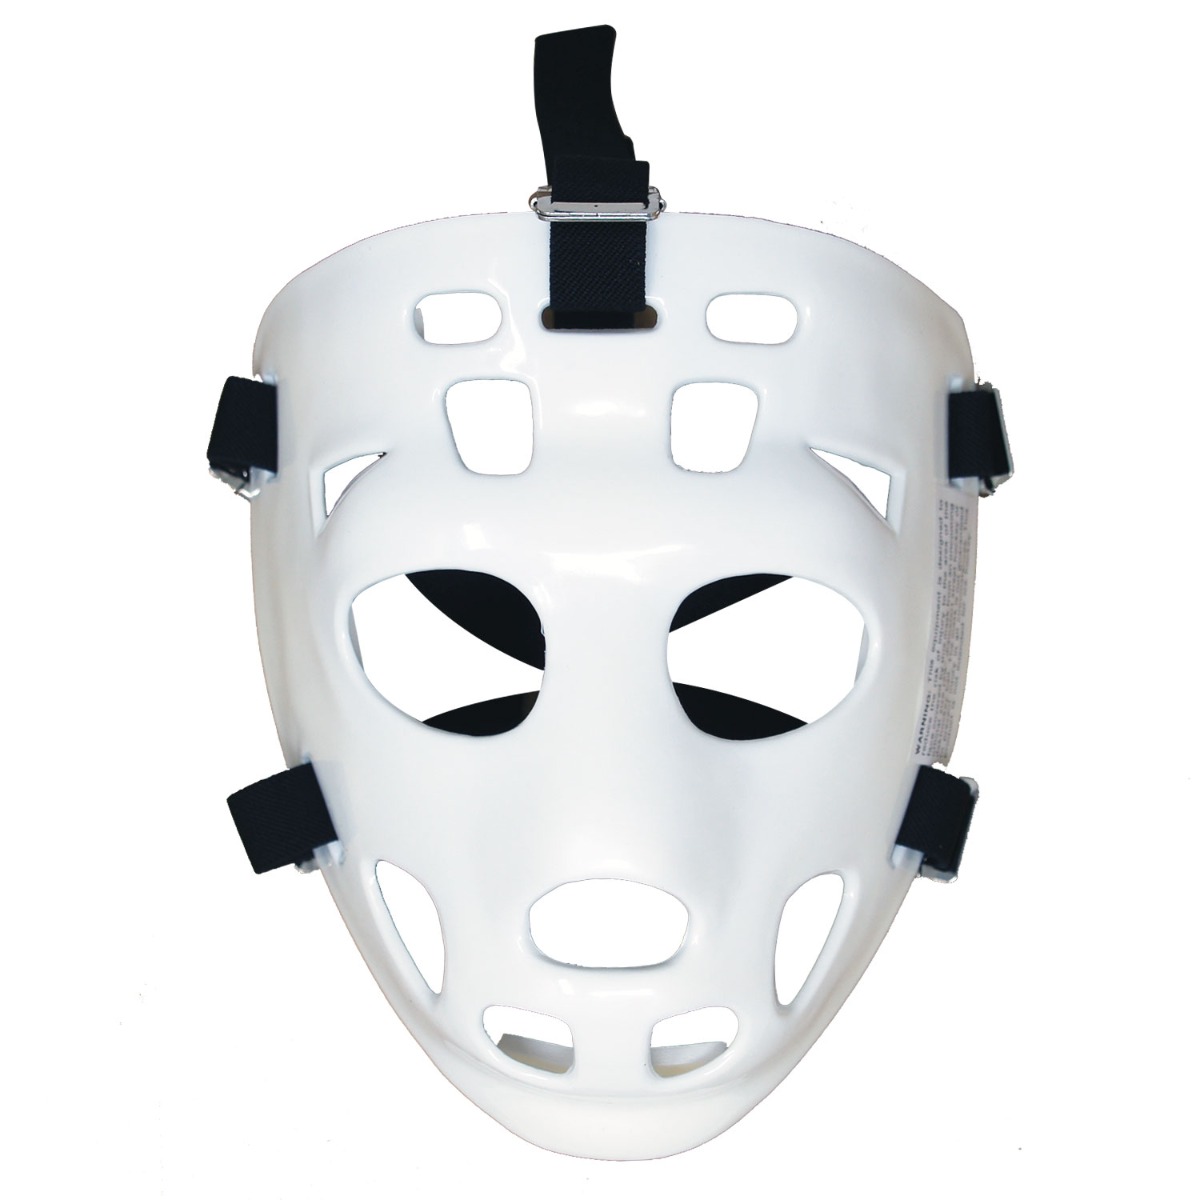 Mylec Jr. Goalie Mask